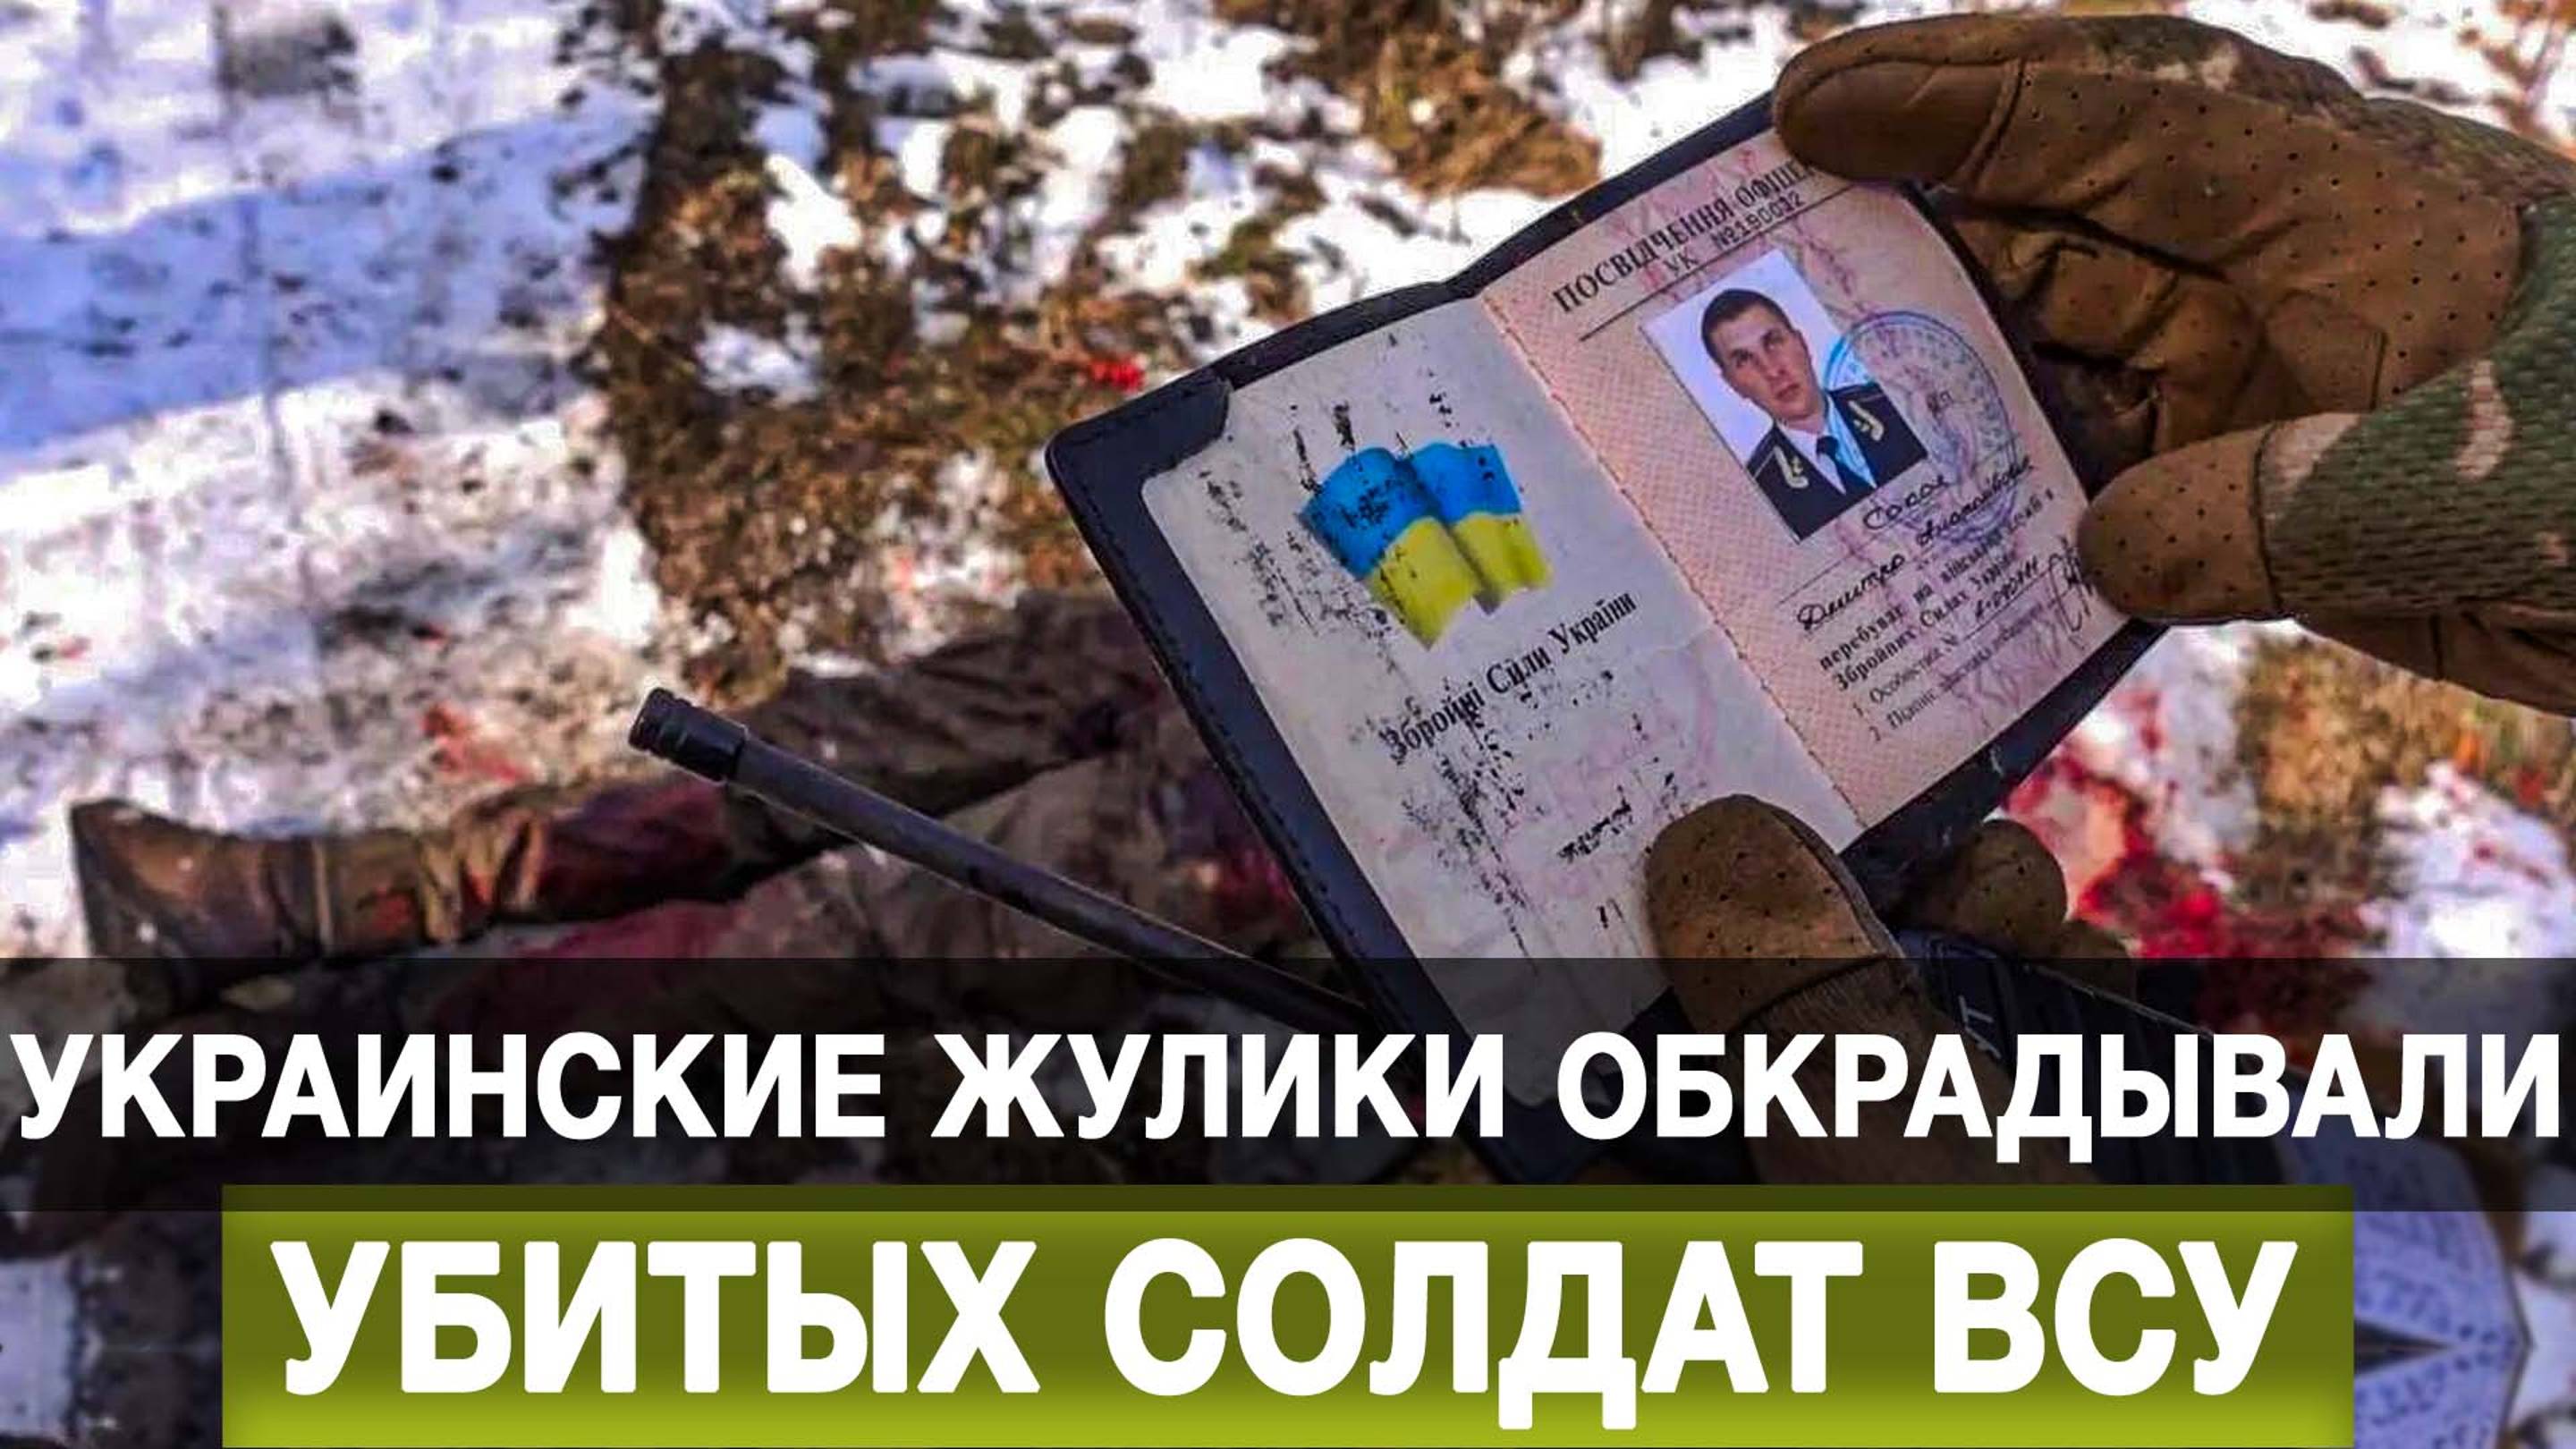 Украинские жулики обкрадывали убитых солдат ВСУ